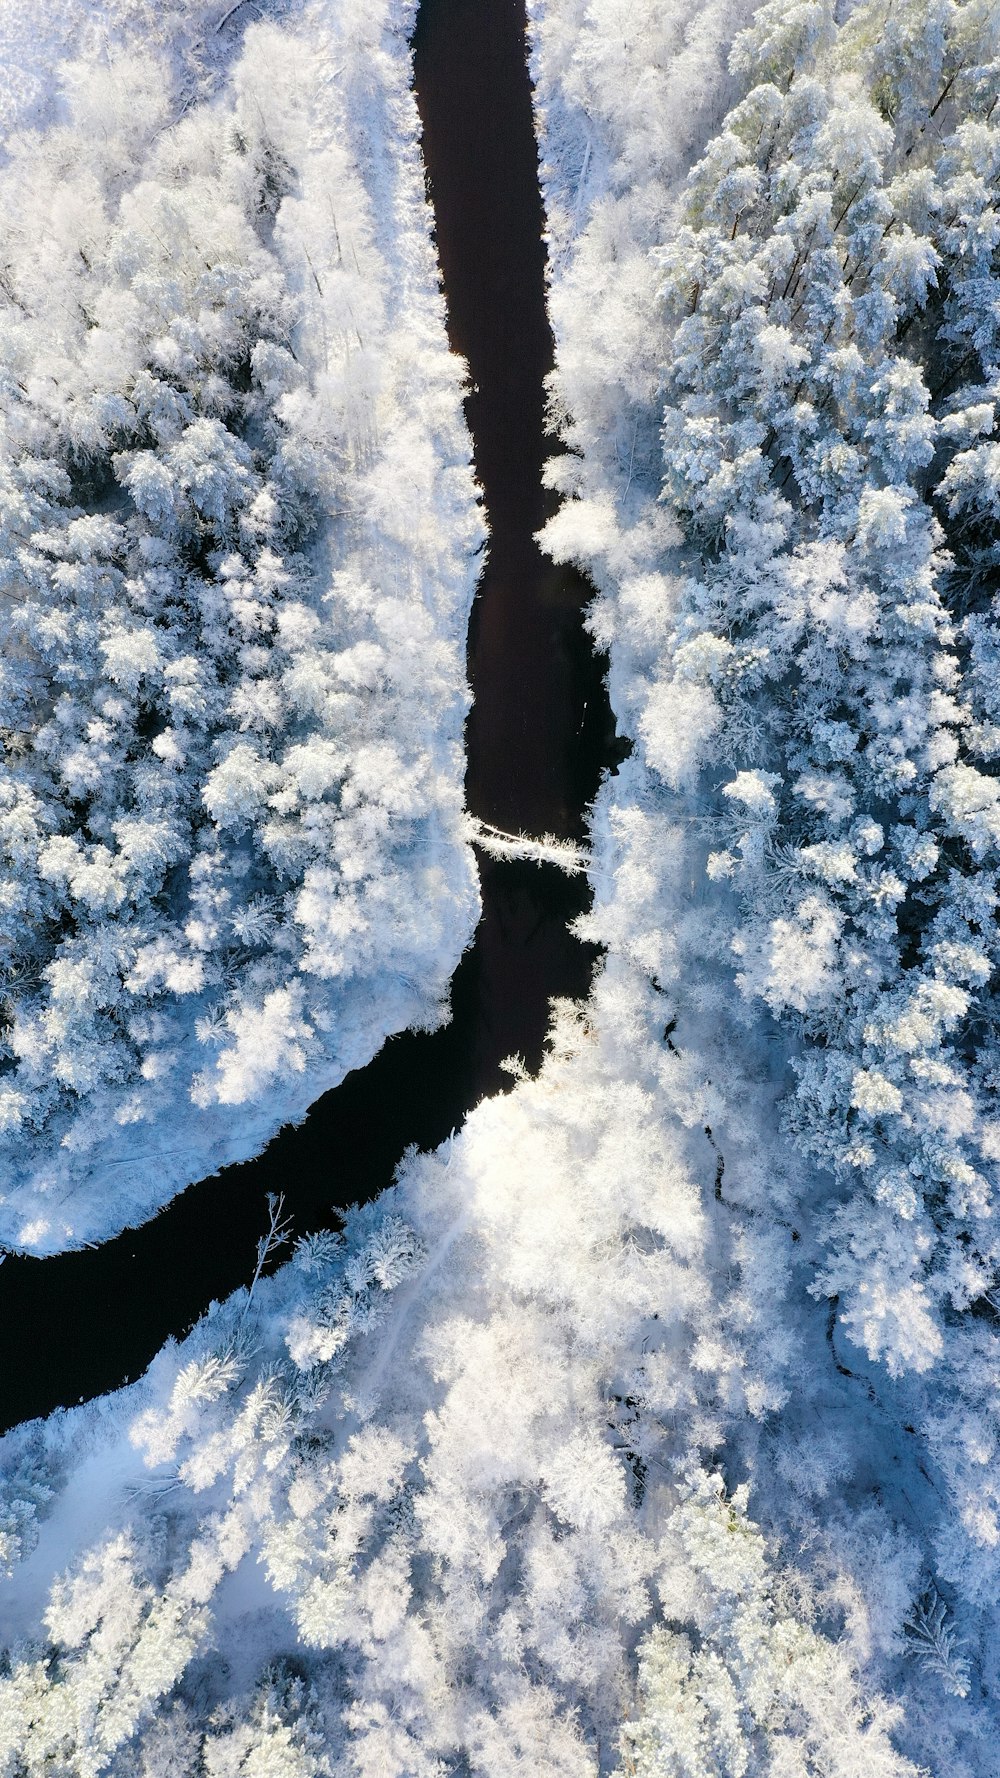 Fluss in der Nähe von Schneewald